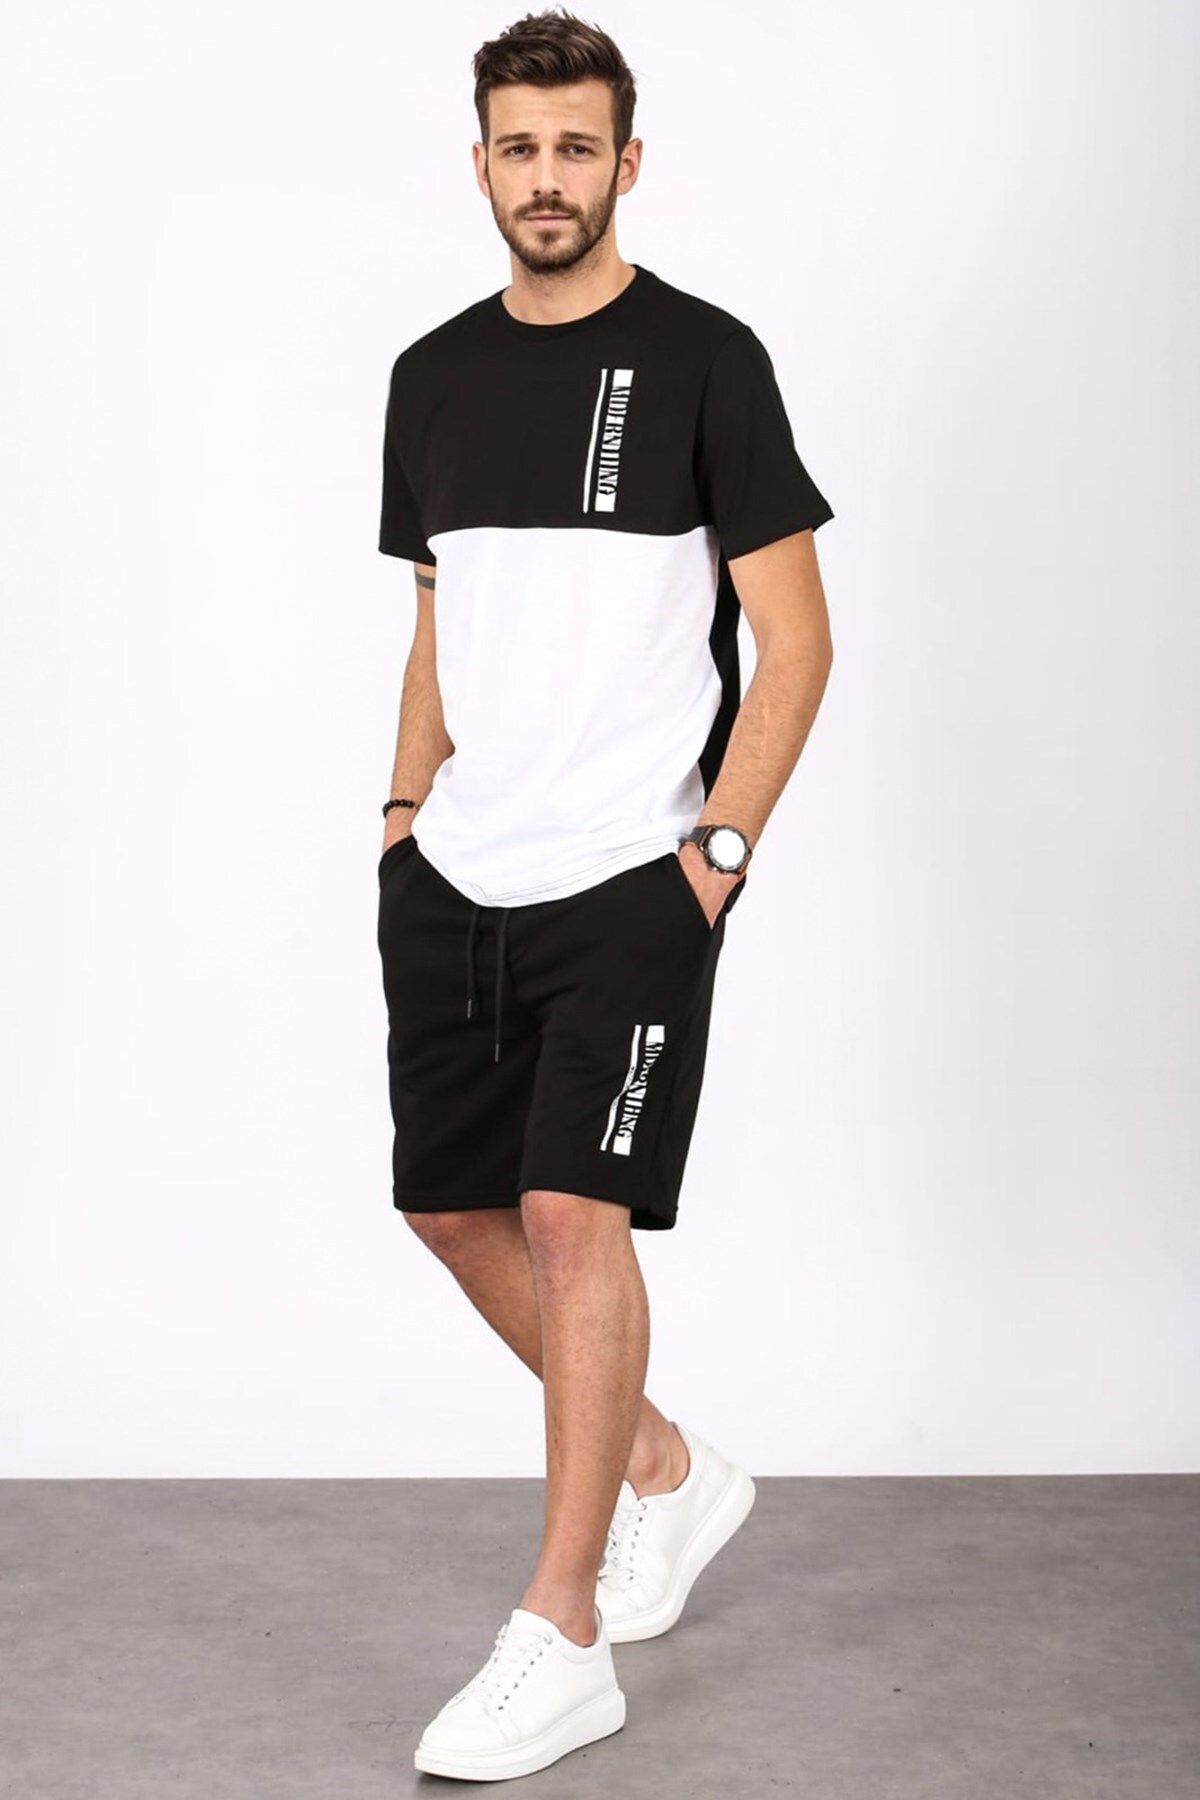 ست تی شرت و شلوارک اسپرت مدل دو رنگ کاپوت دار طرح چاپی مردانه مدمکست Madmext (برند ترکیه)